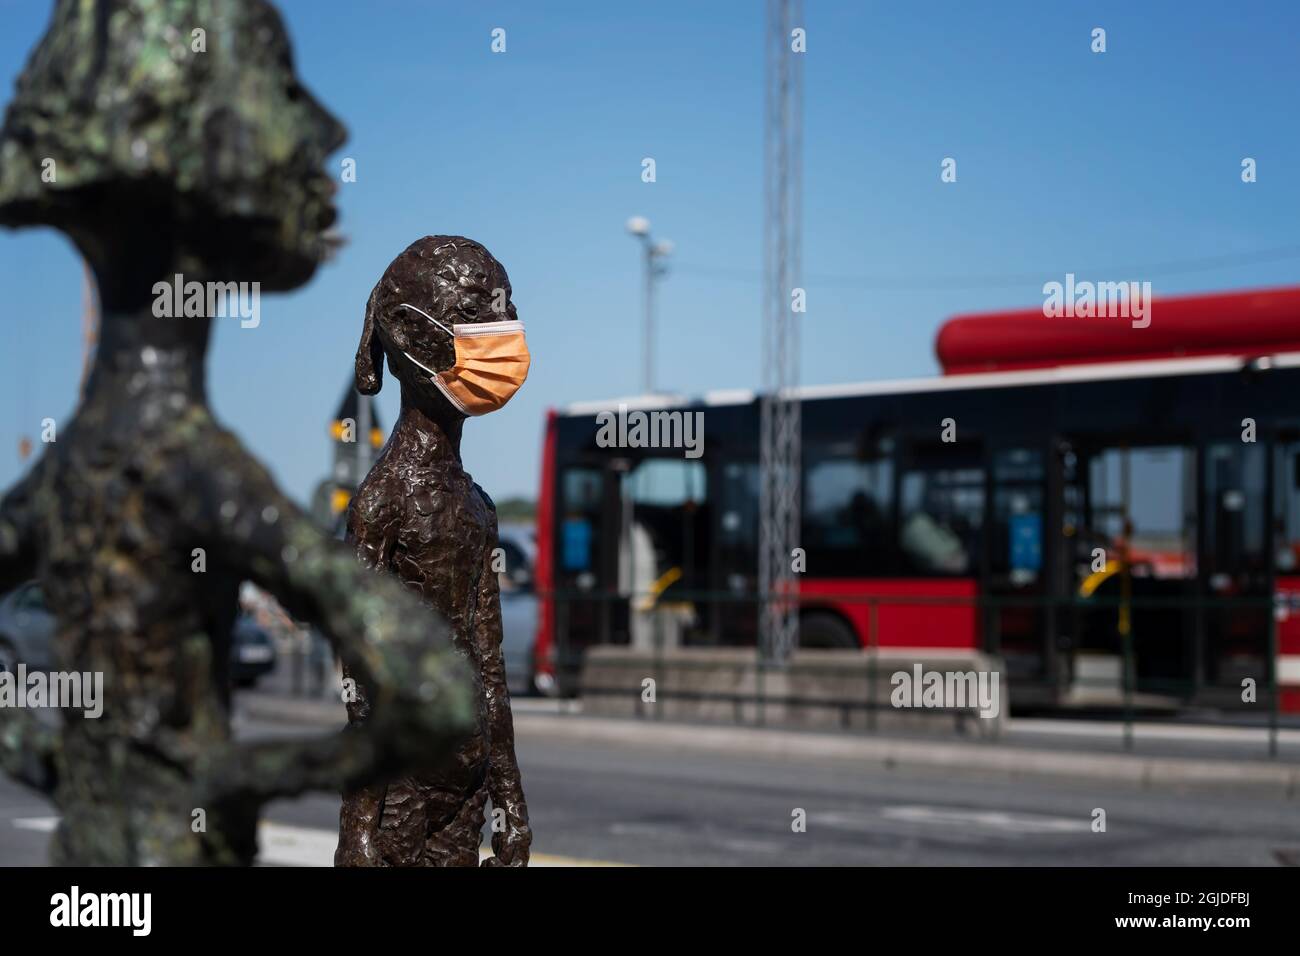 Une statue à Slussen, Stockholm, portant un masque facial. Photo: Stina Stjernkvist / TT code 11610 Banque D'Images